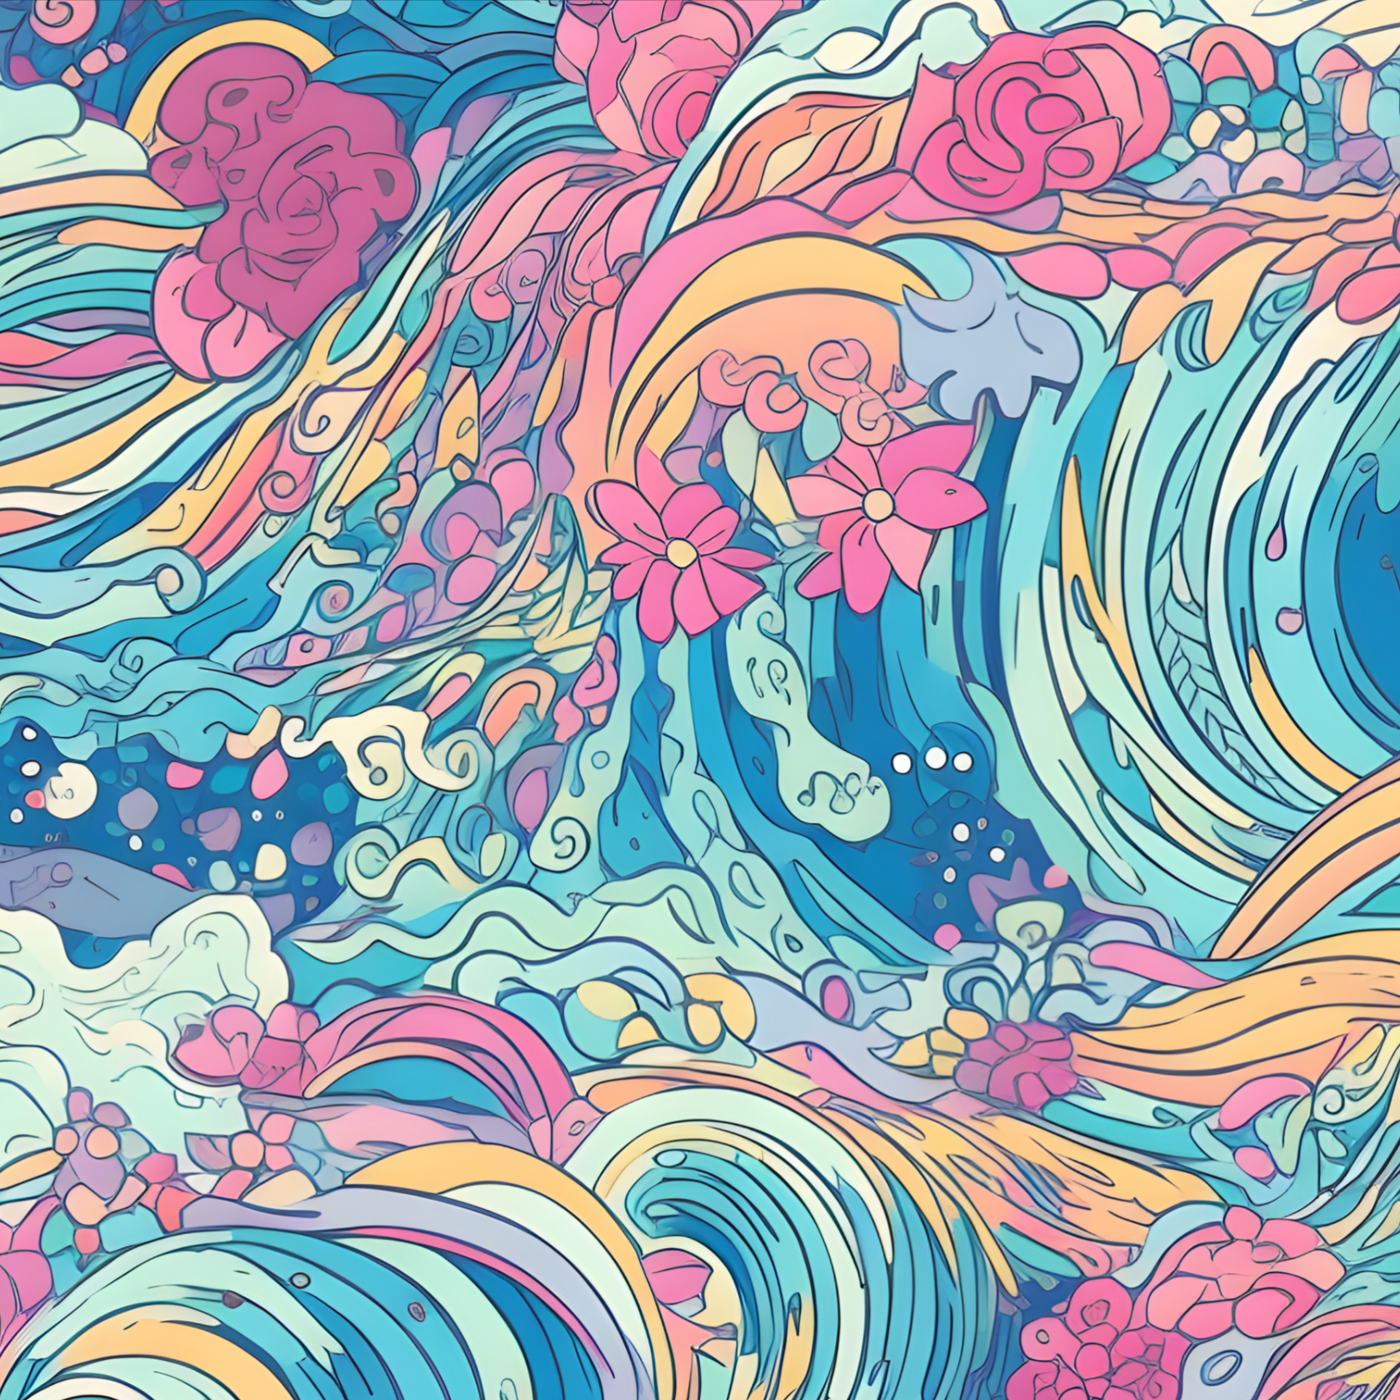 Preppy Waves- Ponytail